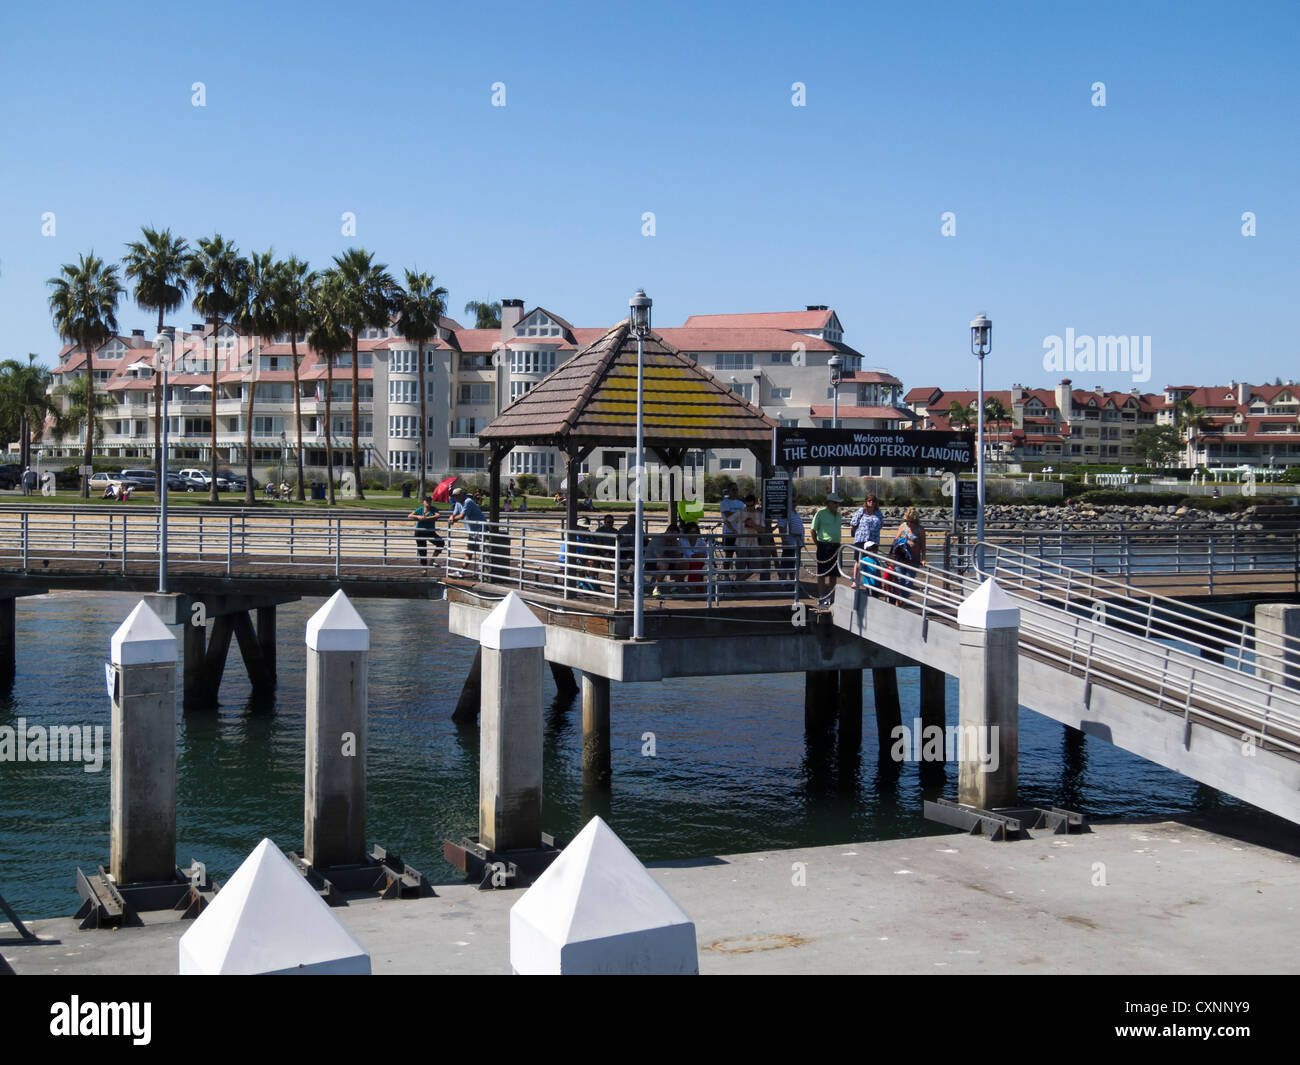 Coronado Island Ferry Pier, San Diego CA Stock Photo